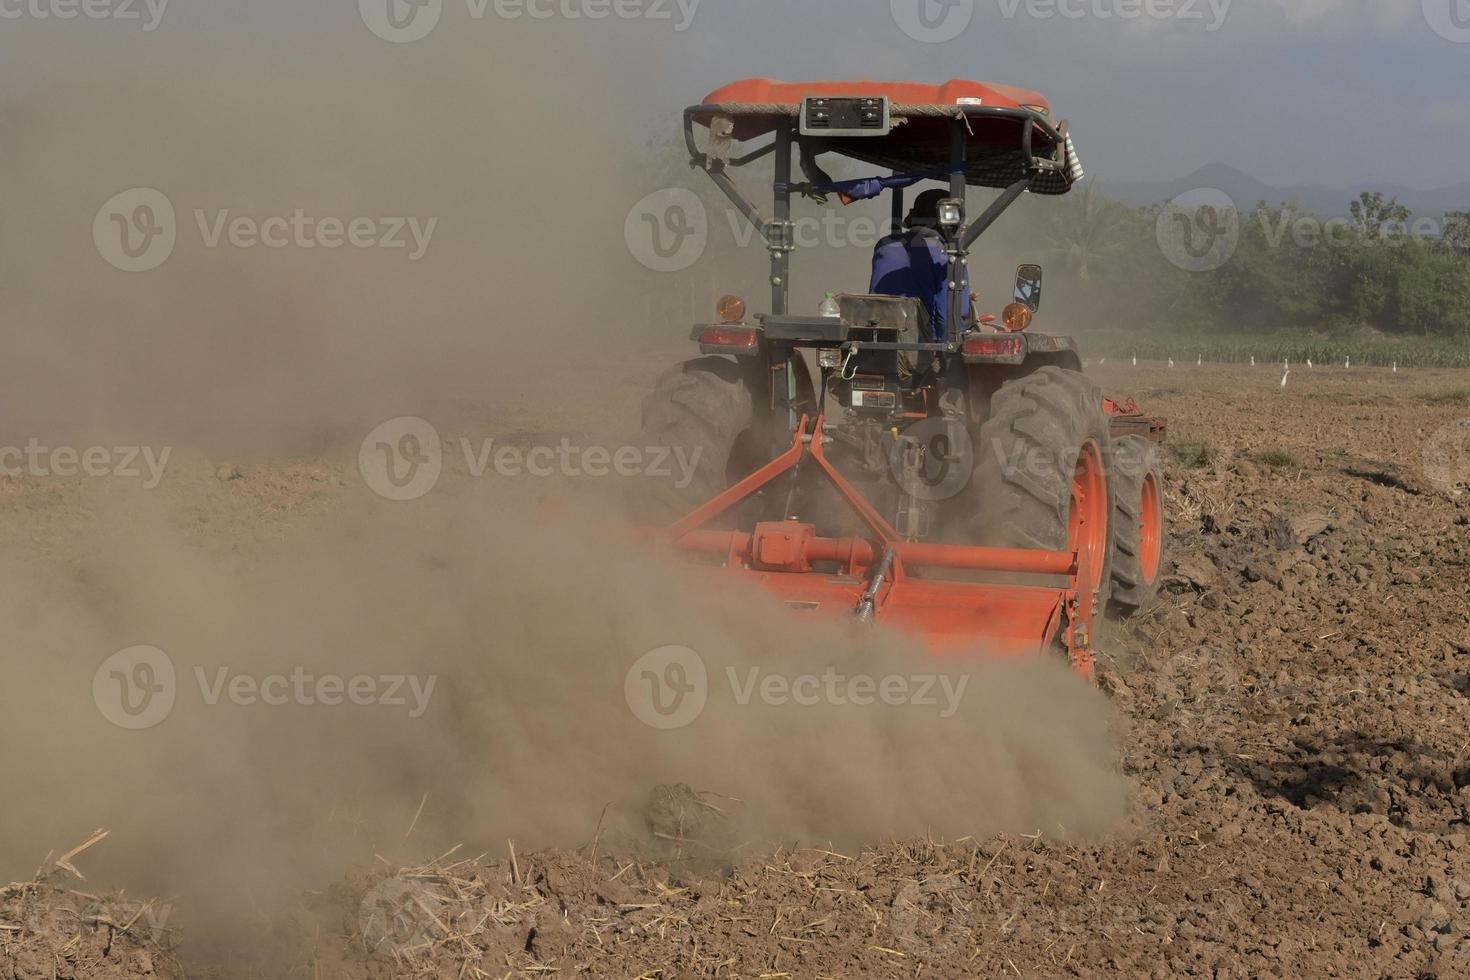 agricultores em tratores preparam cultivadores de terra. tratores arando o solo para ajustar o solo para a agricultura foto